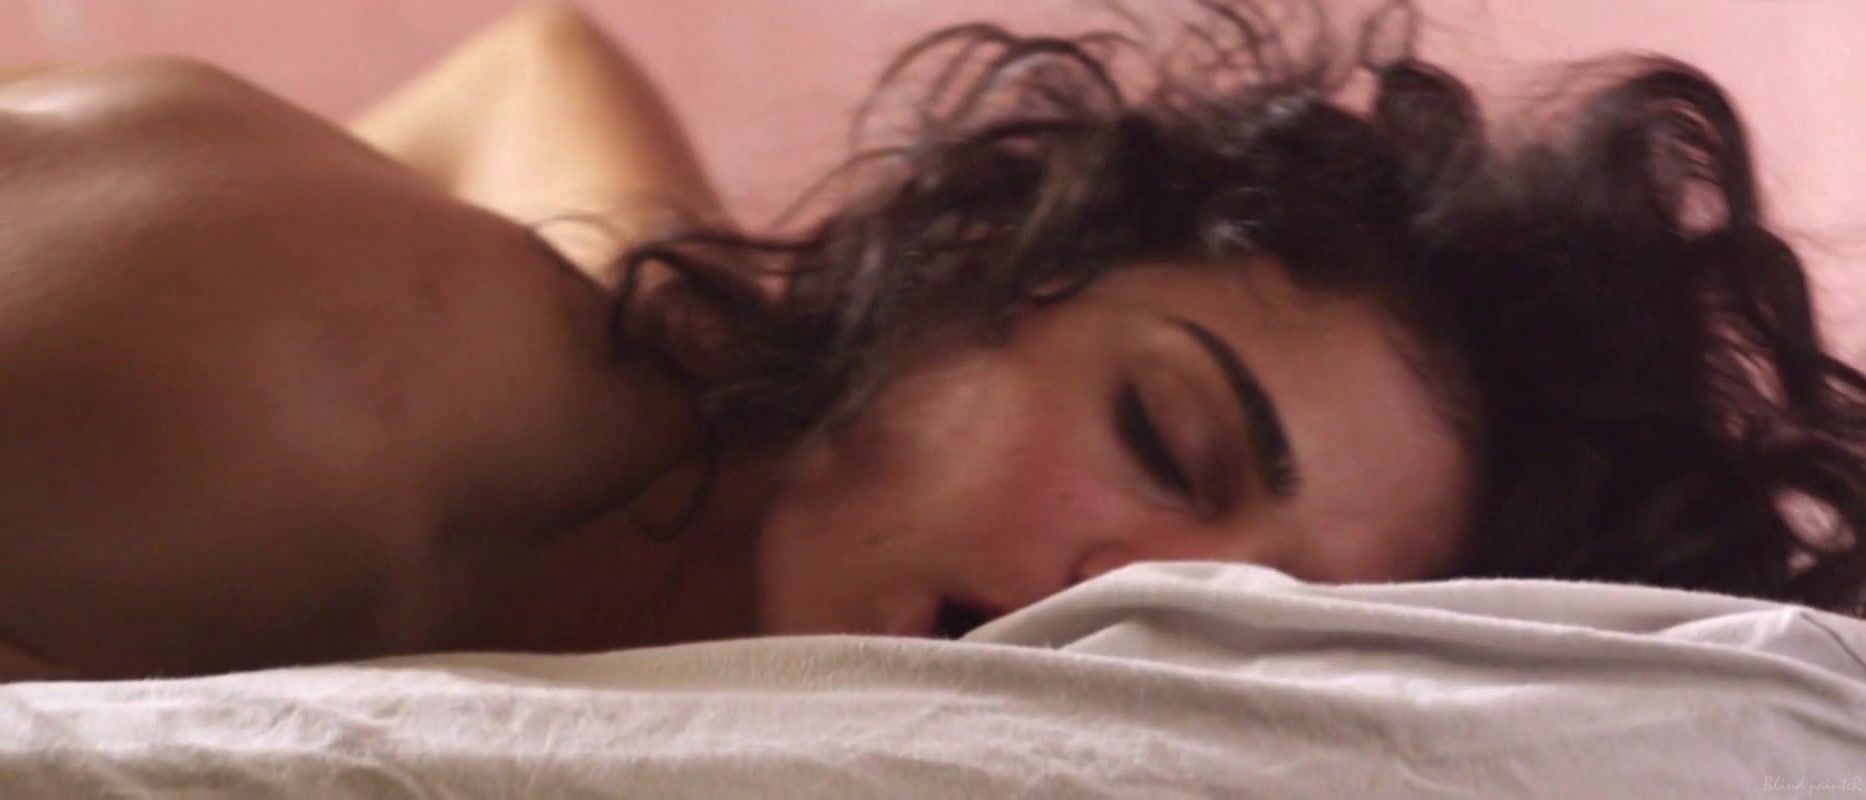 Ecchi Fabiola Buzim - Eu Queria Ser Arrebatada, Amordacada e, nas minhas costas, Tatuada (2015) TubeZaur